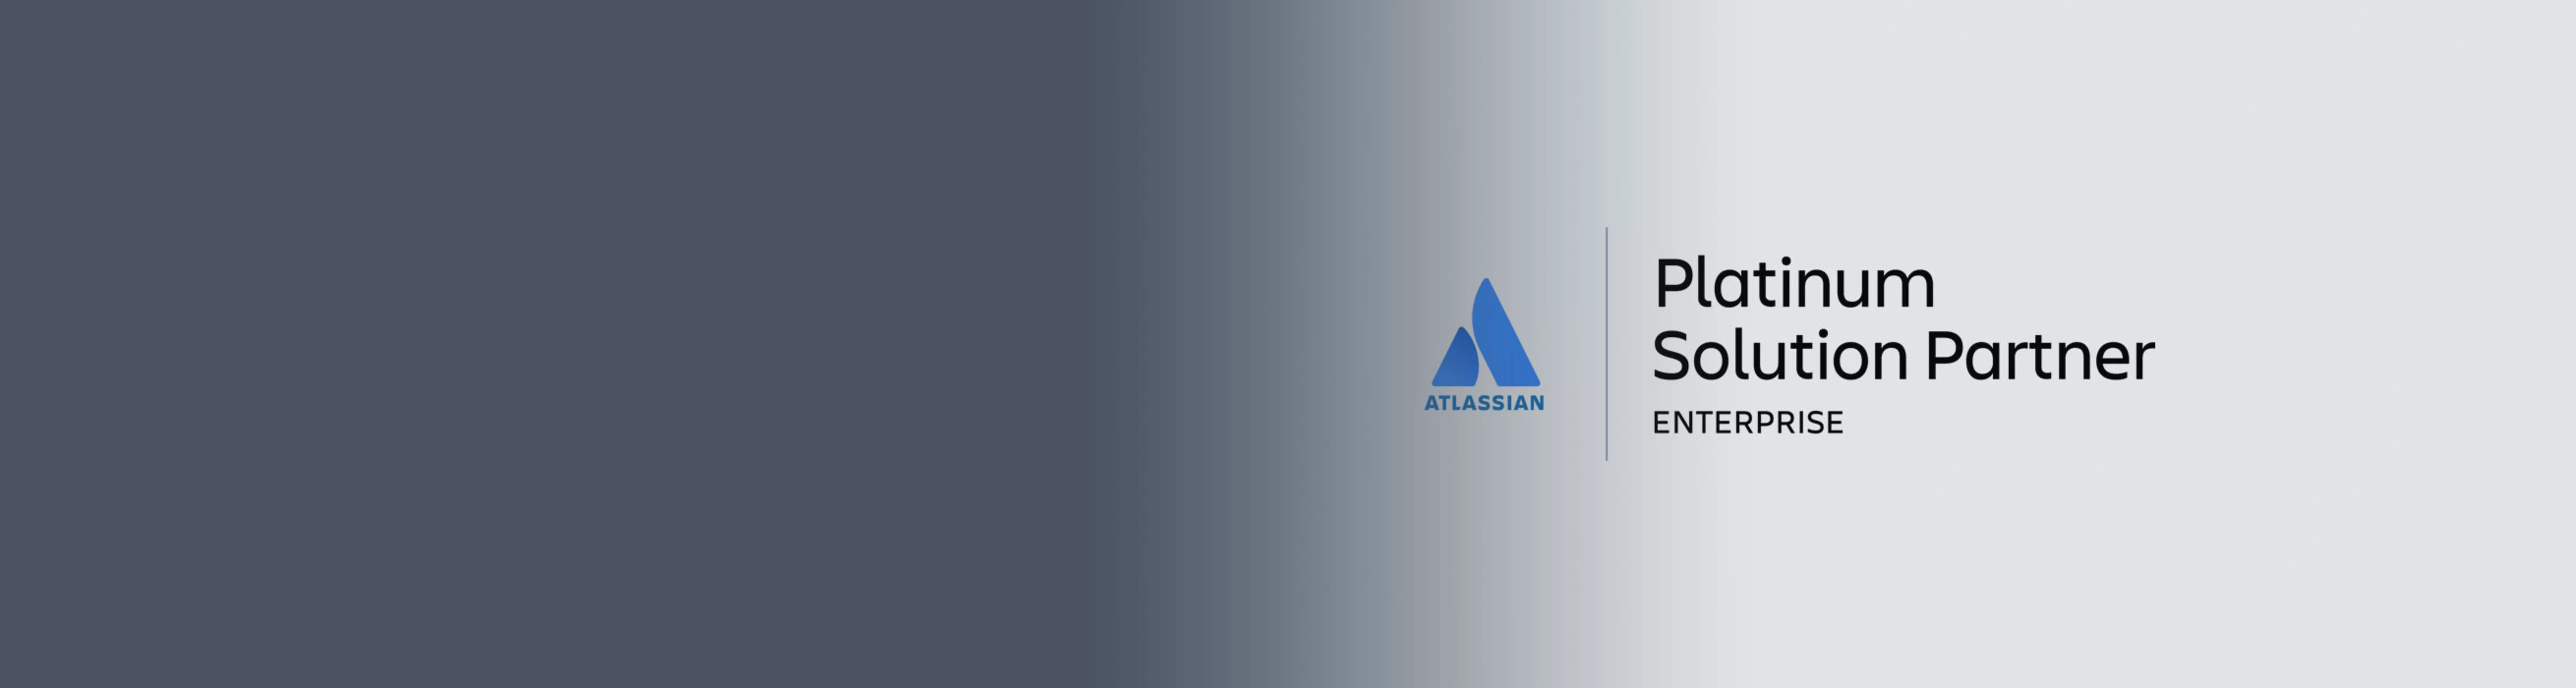 Atlassian Platinum Solution Partner Logo